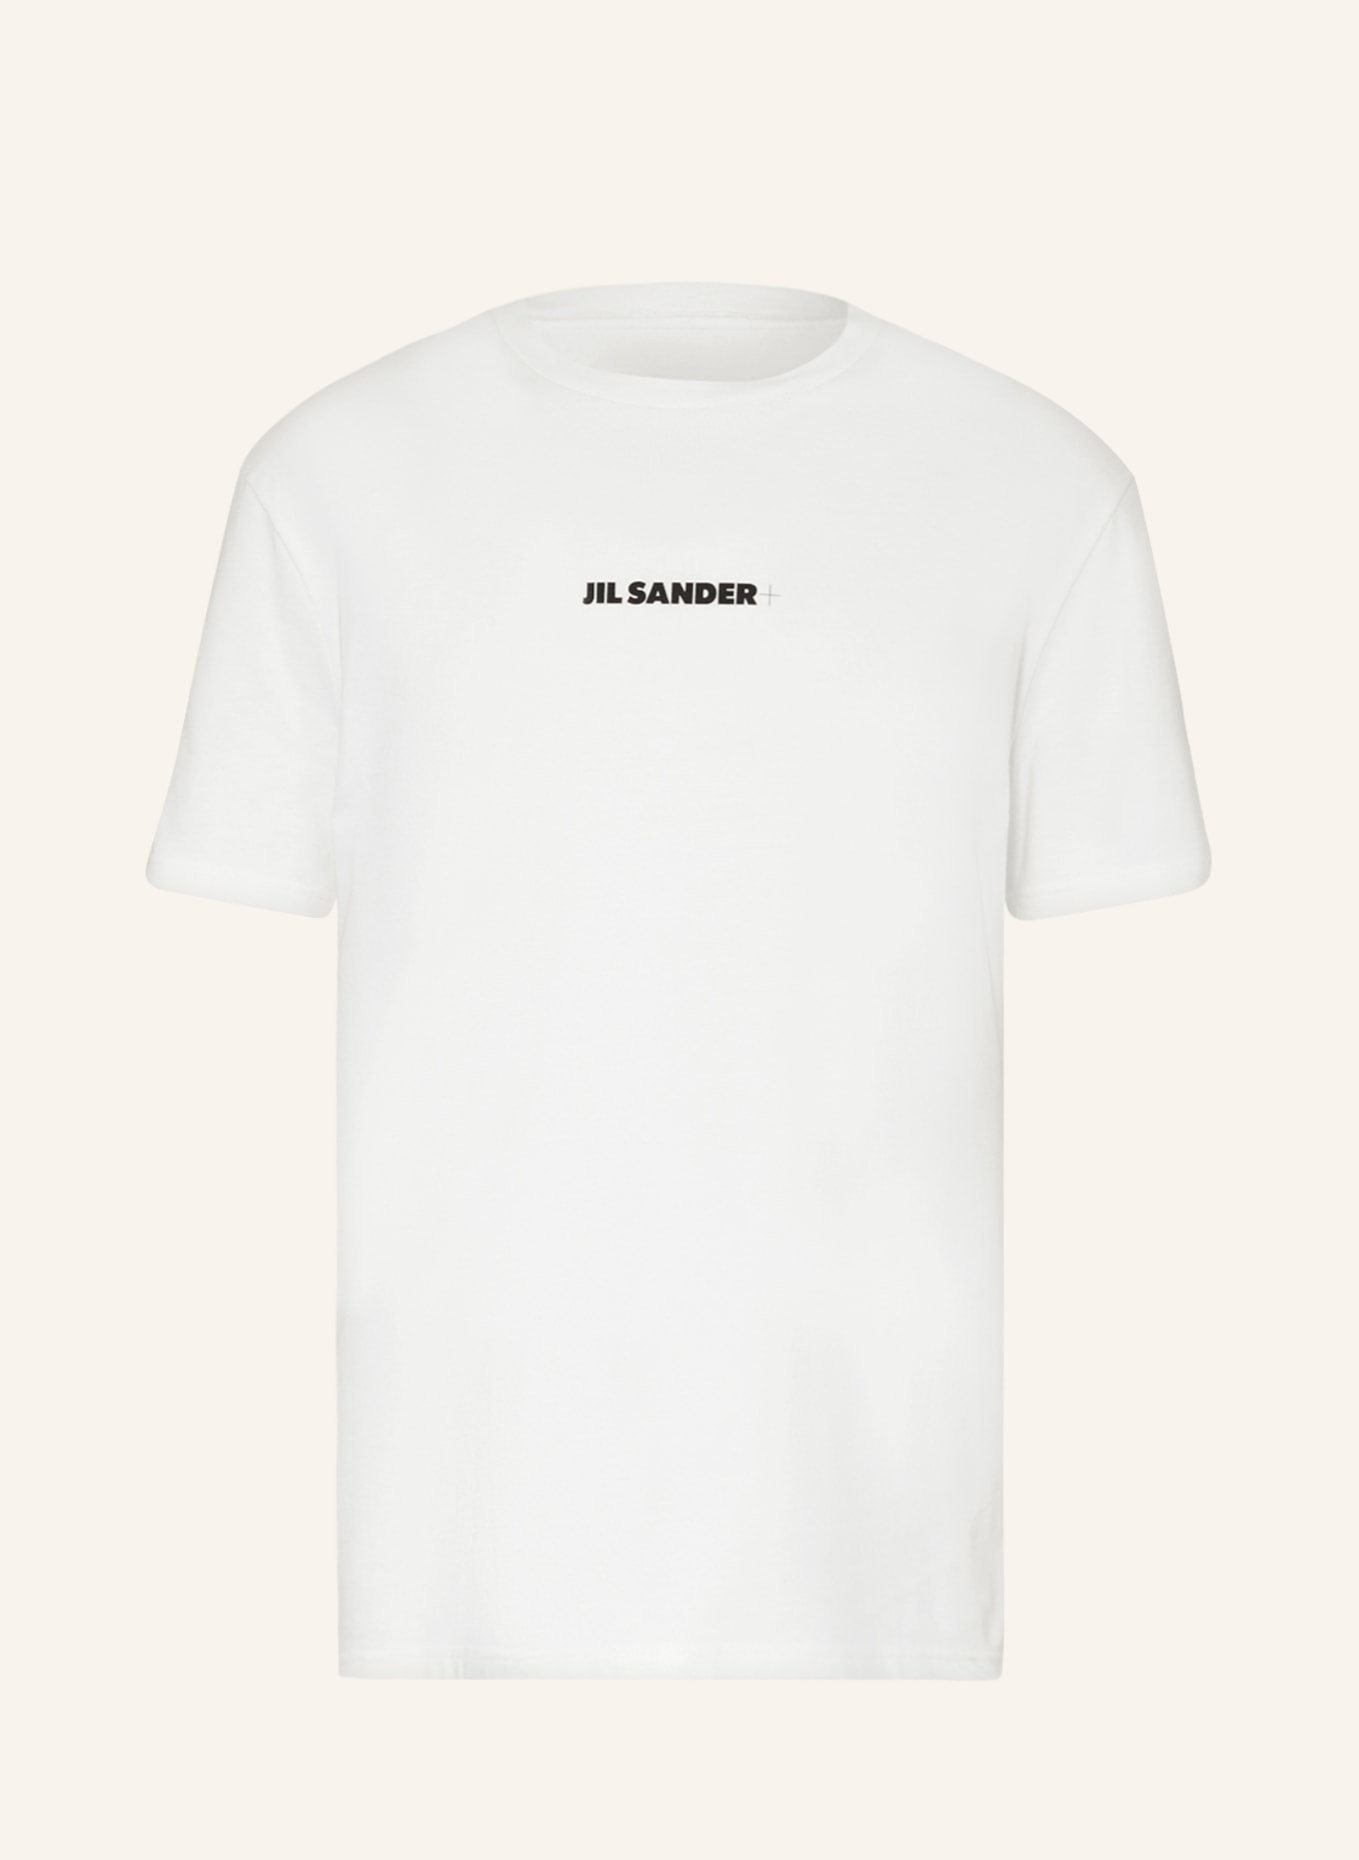 JIL SANDER T-Shirt, Farbe: ECRU (Bild 1)